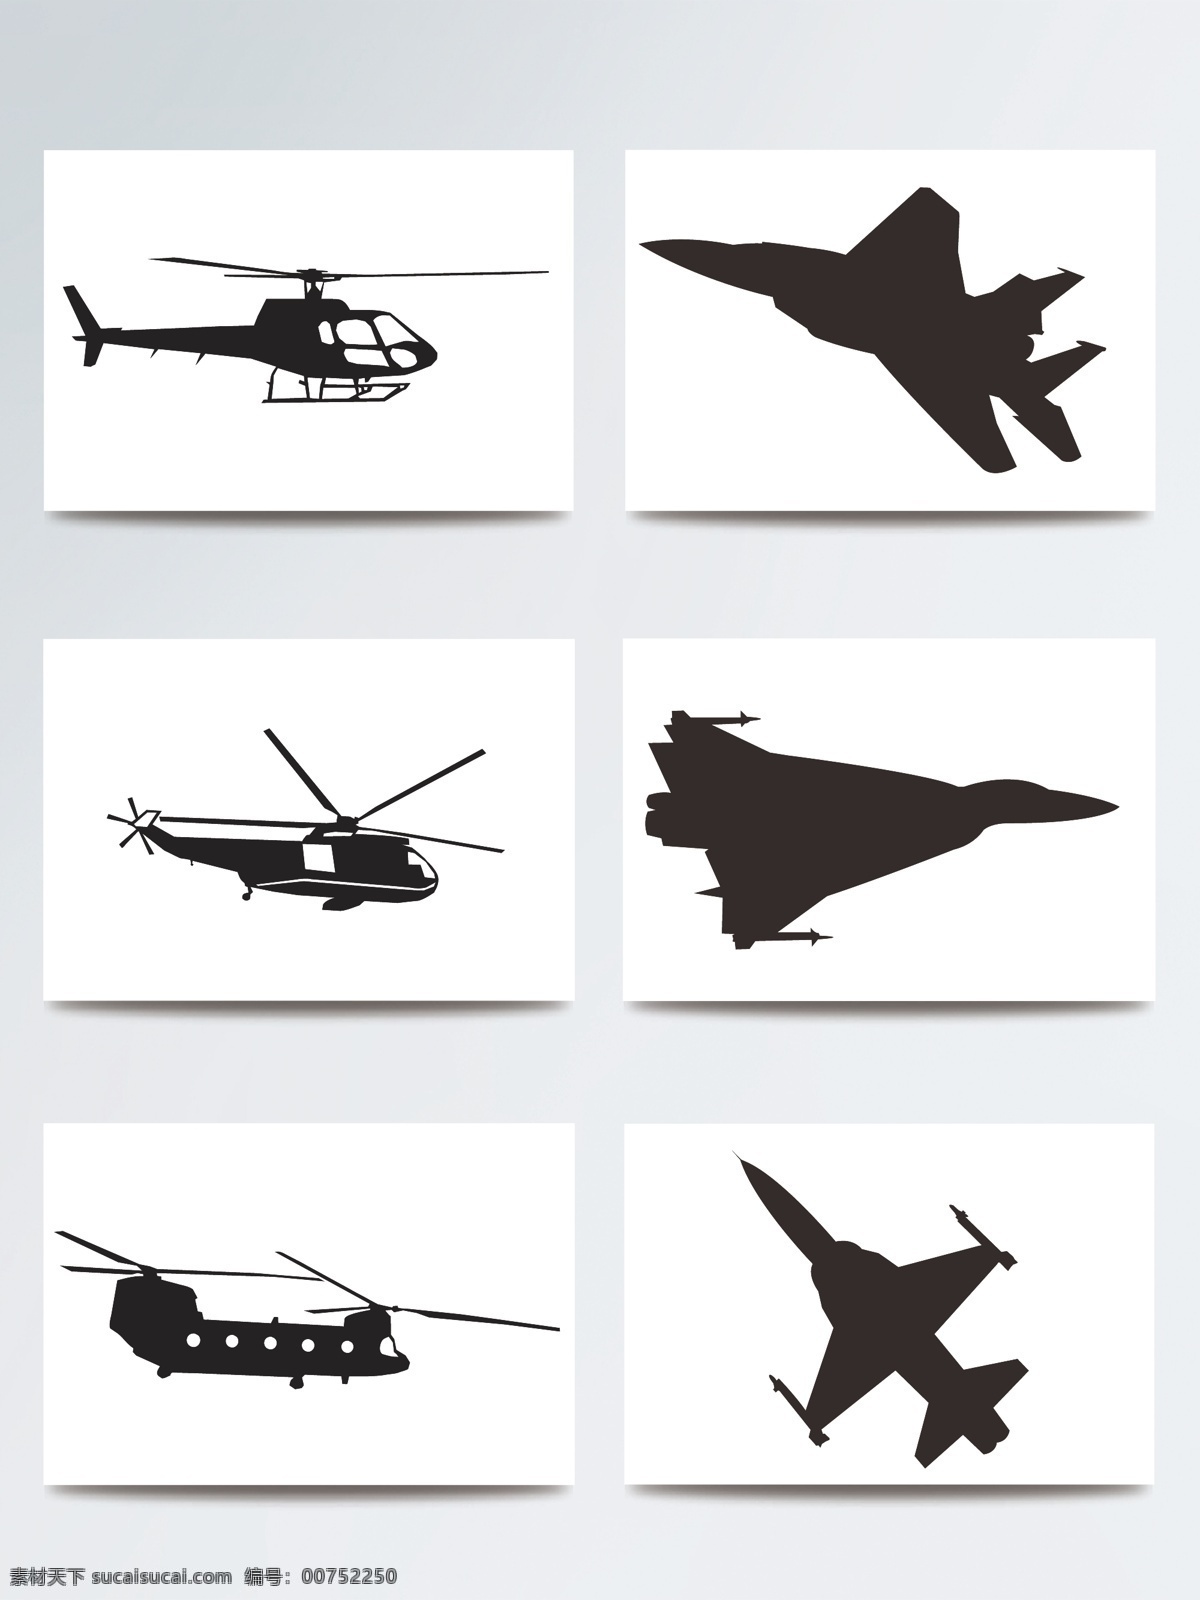 飞机 剪影 装饰 图案 大型飞机 飞机集合 飞机剪影 飞机模板下载 飞机模型 飞机矢量素材 交通工具 客机 矢量 矢量飞机 现代科技